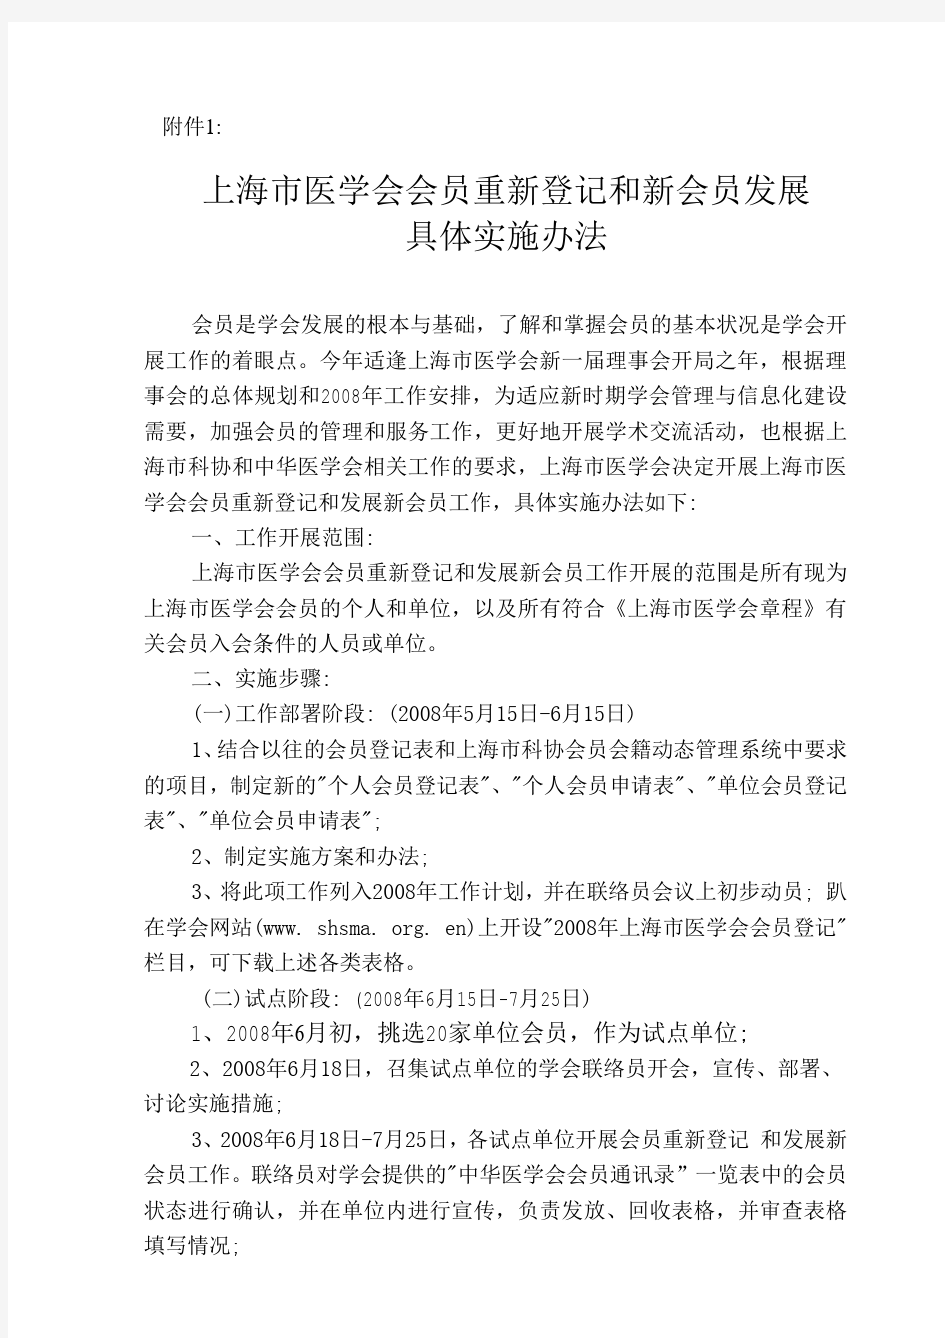 上海市医学会会员重新登记和新会员发展